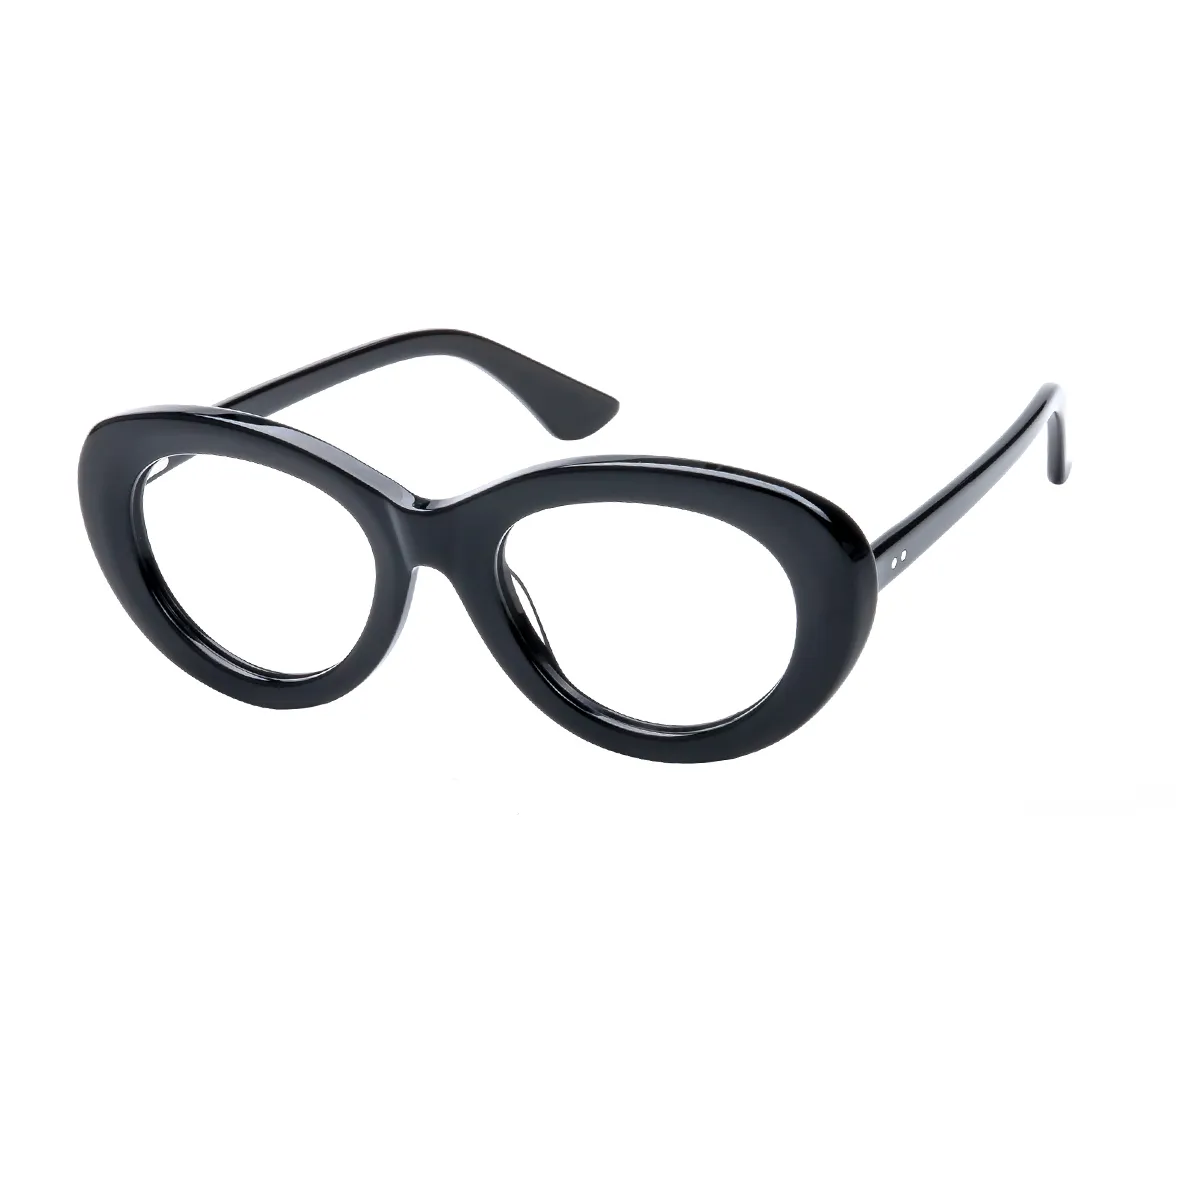 Jossi - Cat-eye Black Glasses for Women - EFE